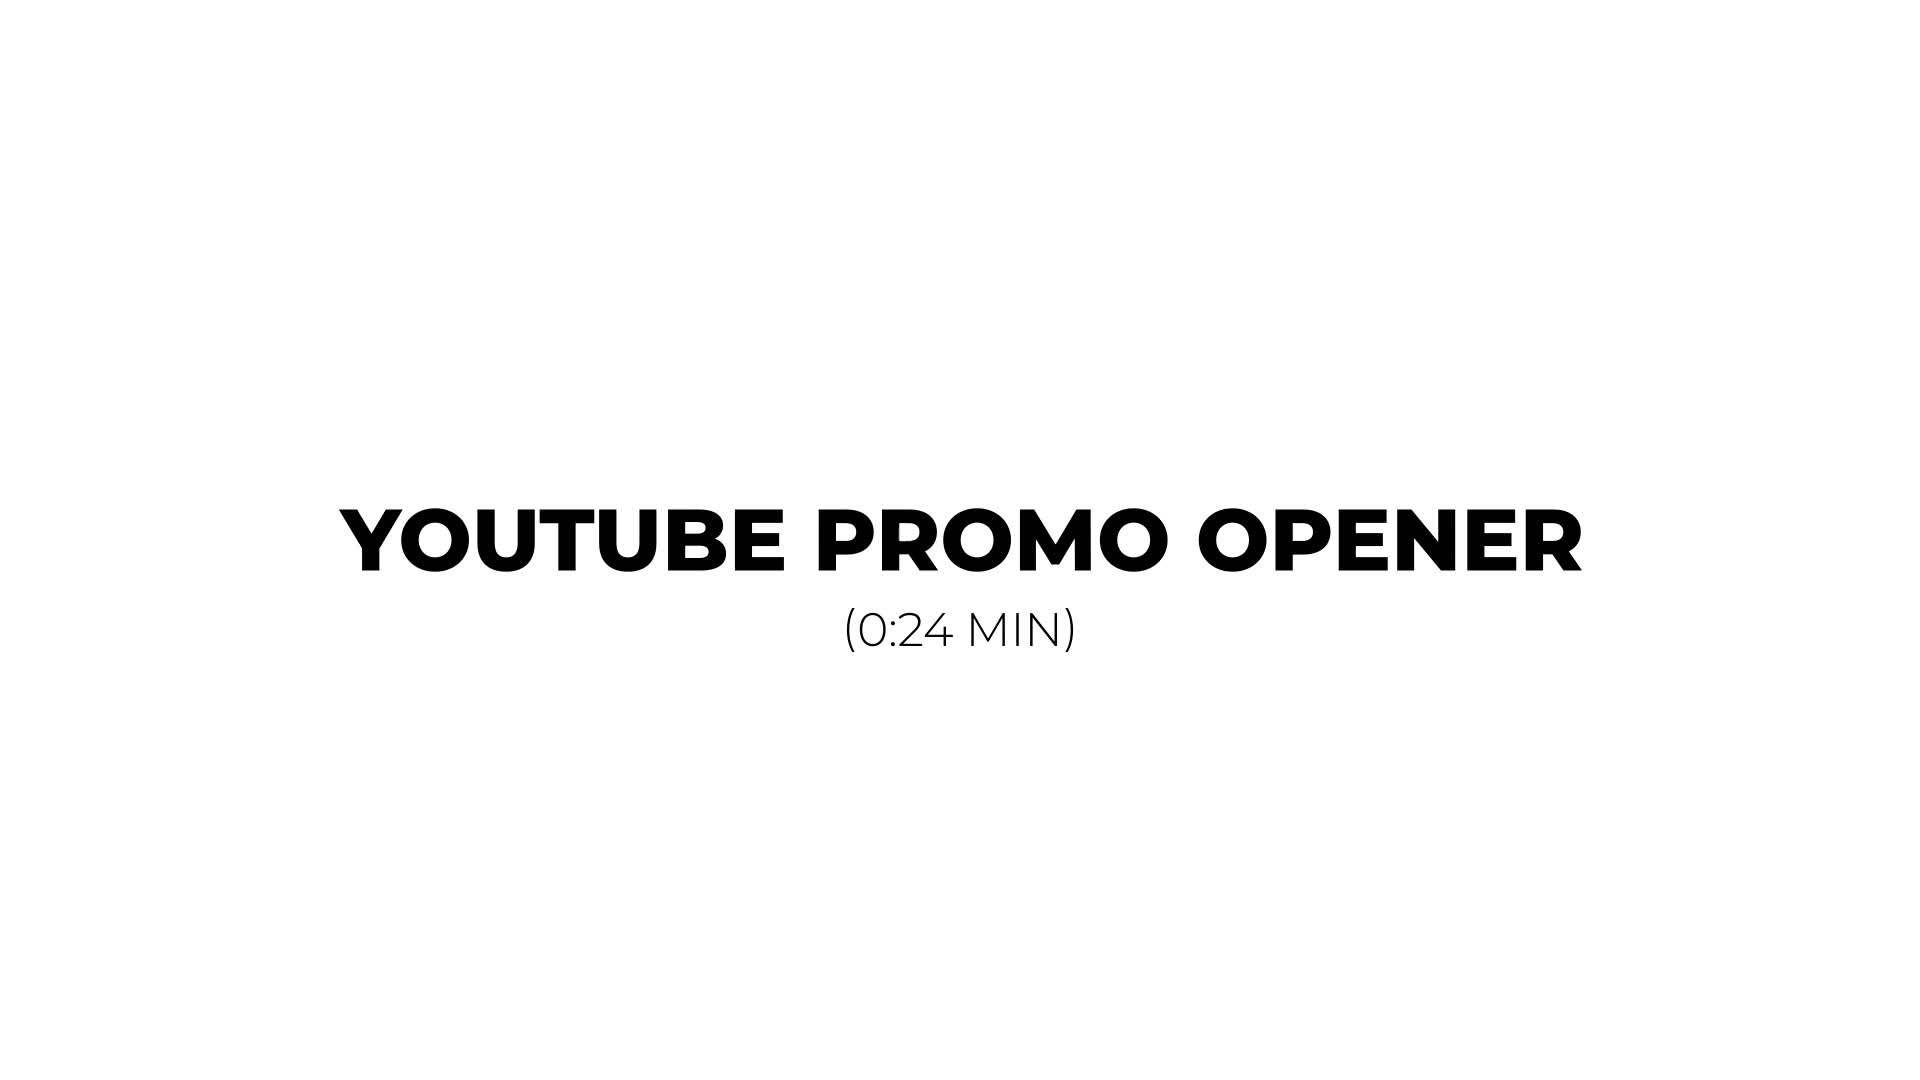 Youtube Promo Opener for Premiere Pro Videohive 37044354 Premiere Pro Image 1